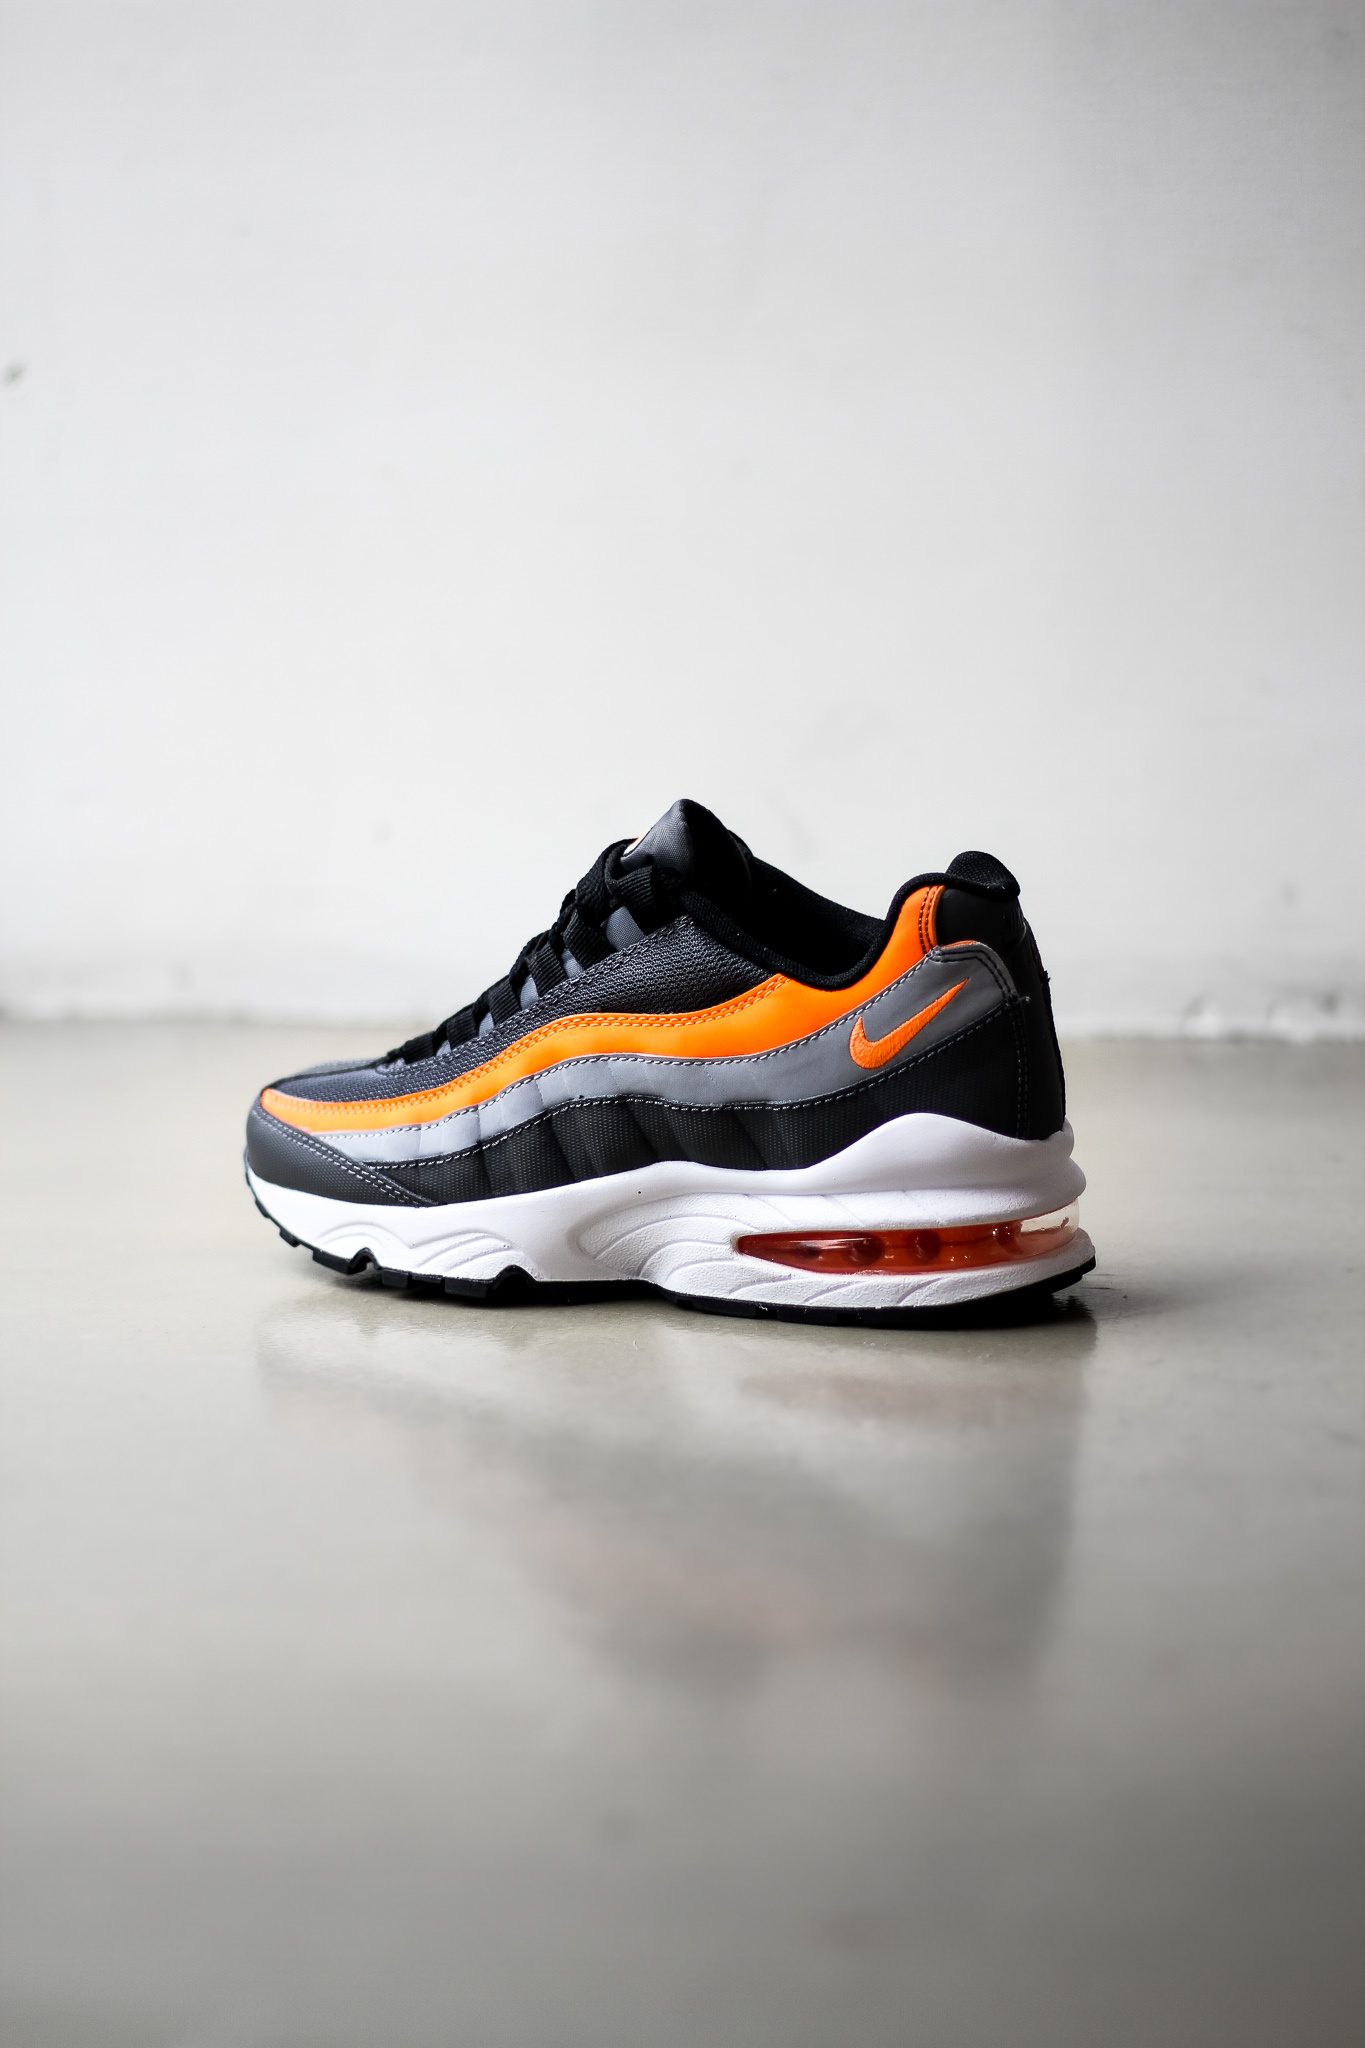 orange black and gray air max 95